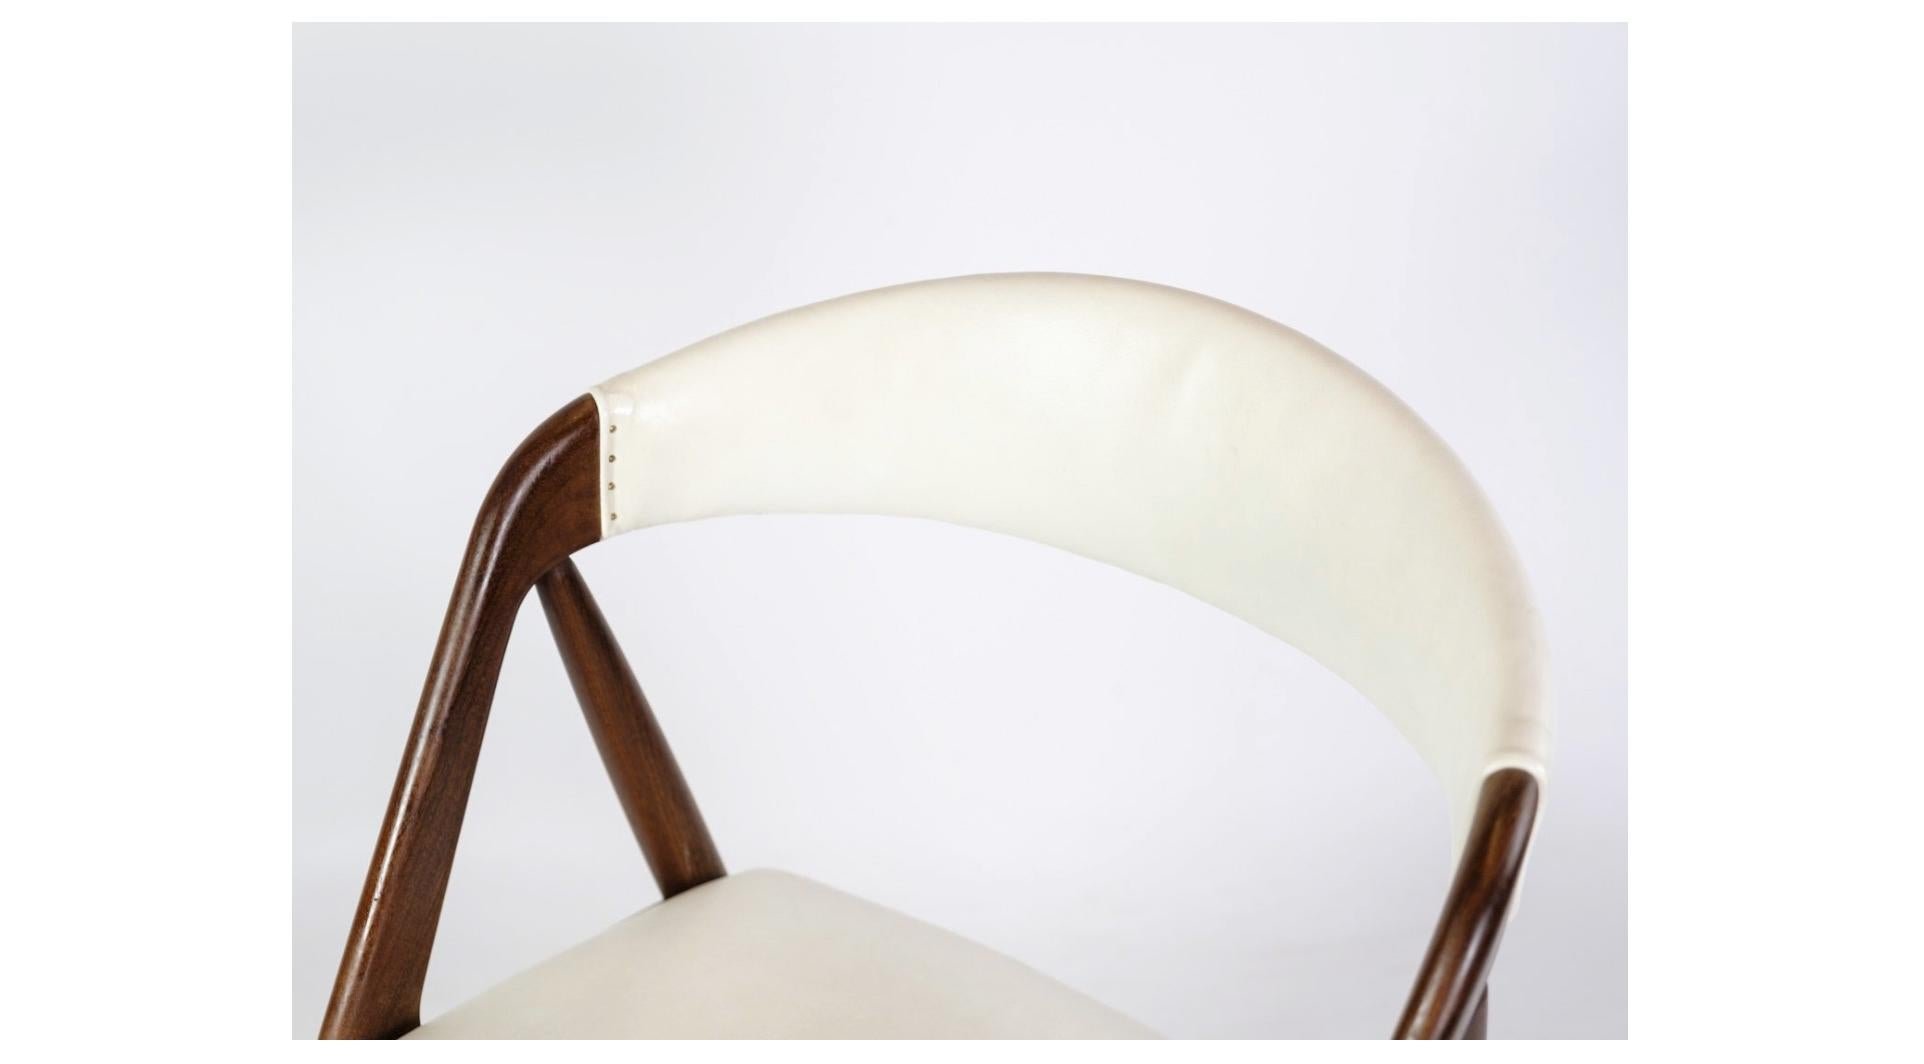 La chaise, conçue par Kai Kristiansen et fabriquée en bois de teck, modèle 31 datant des années 1960 environ et recouverte de cuir blanc, est un meuble remarquable qui représente de la plus belle manière la tradition du design scandinave.

Les